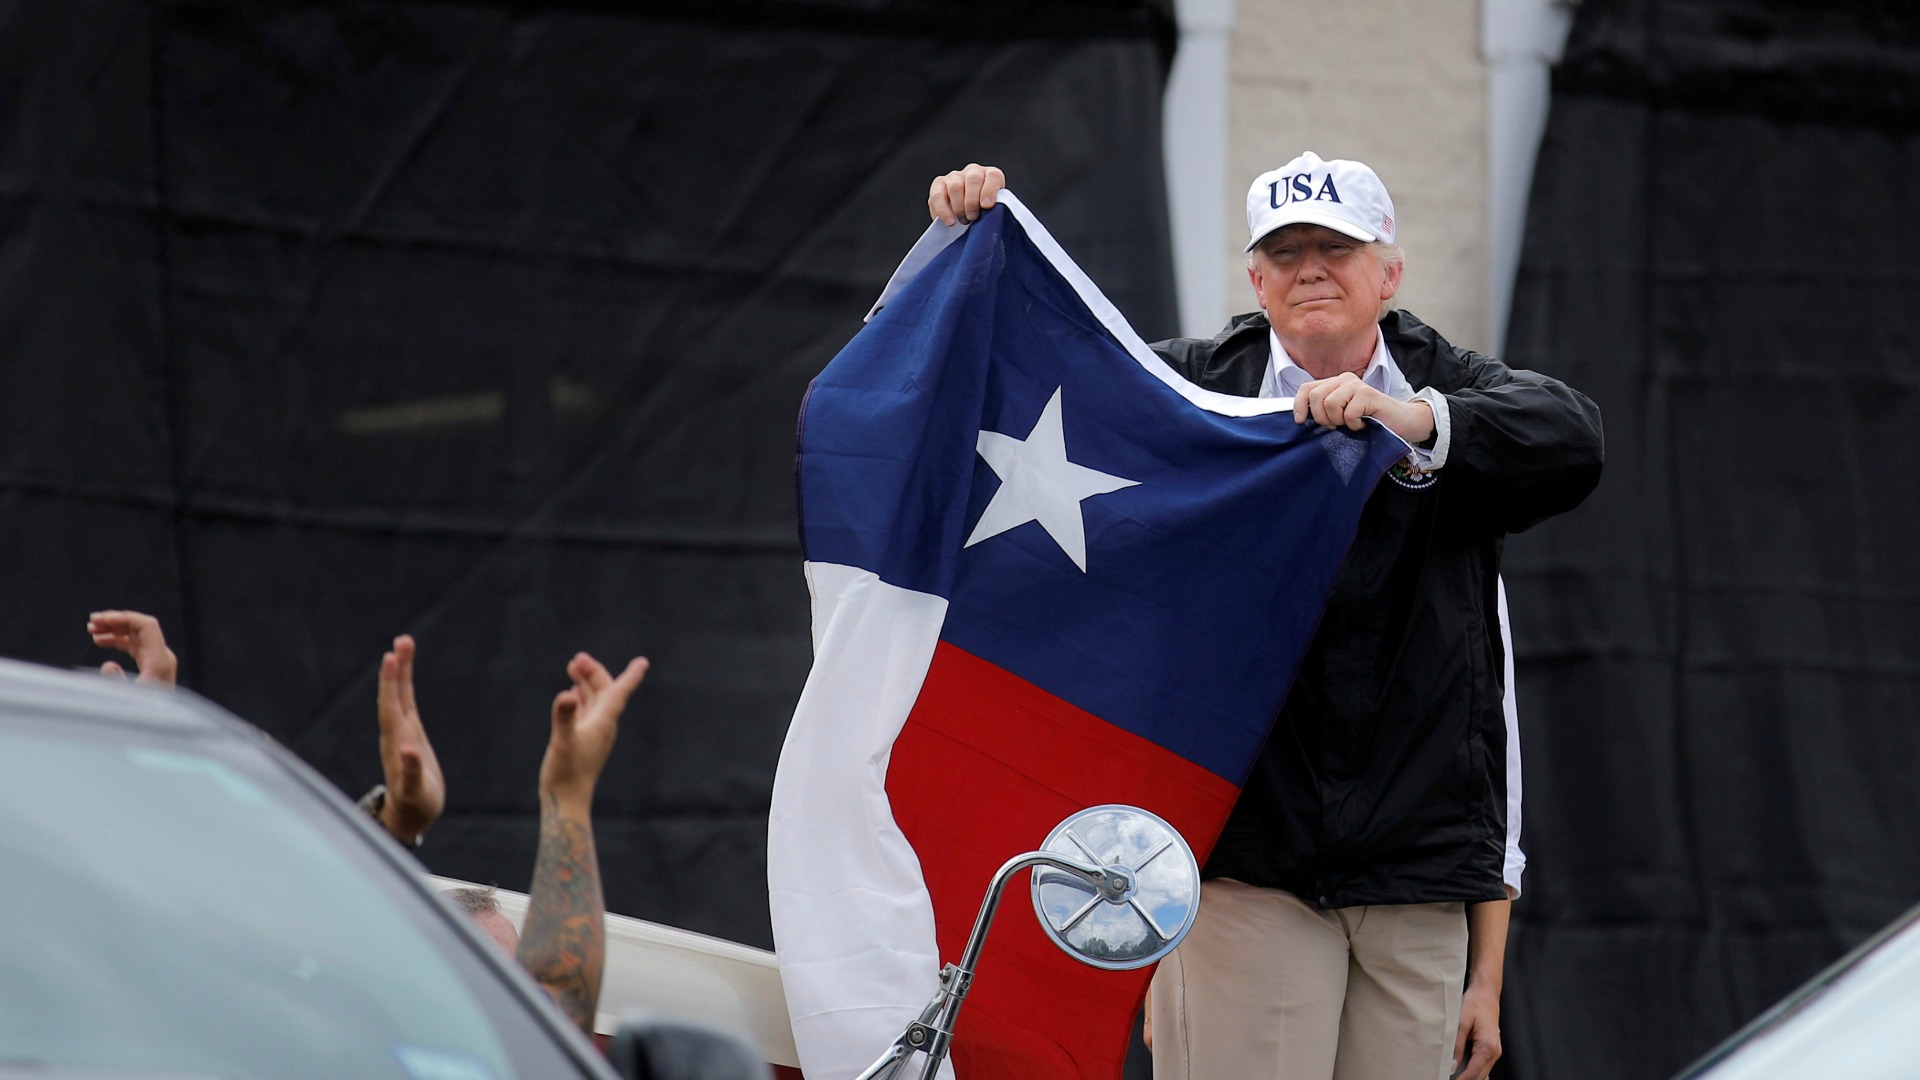 "Texas puede enfrentarse a cualquier cosa", dice Trump tras su visita